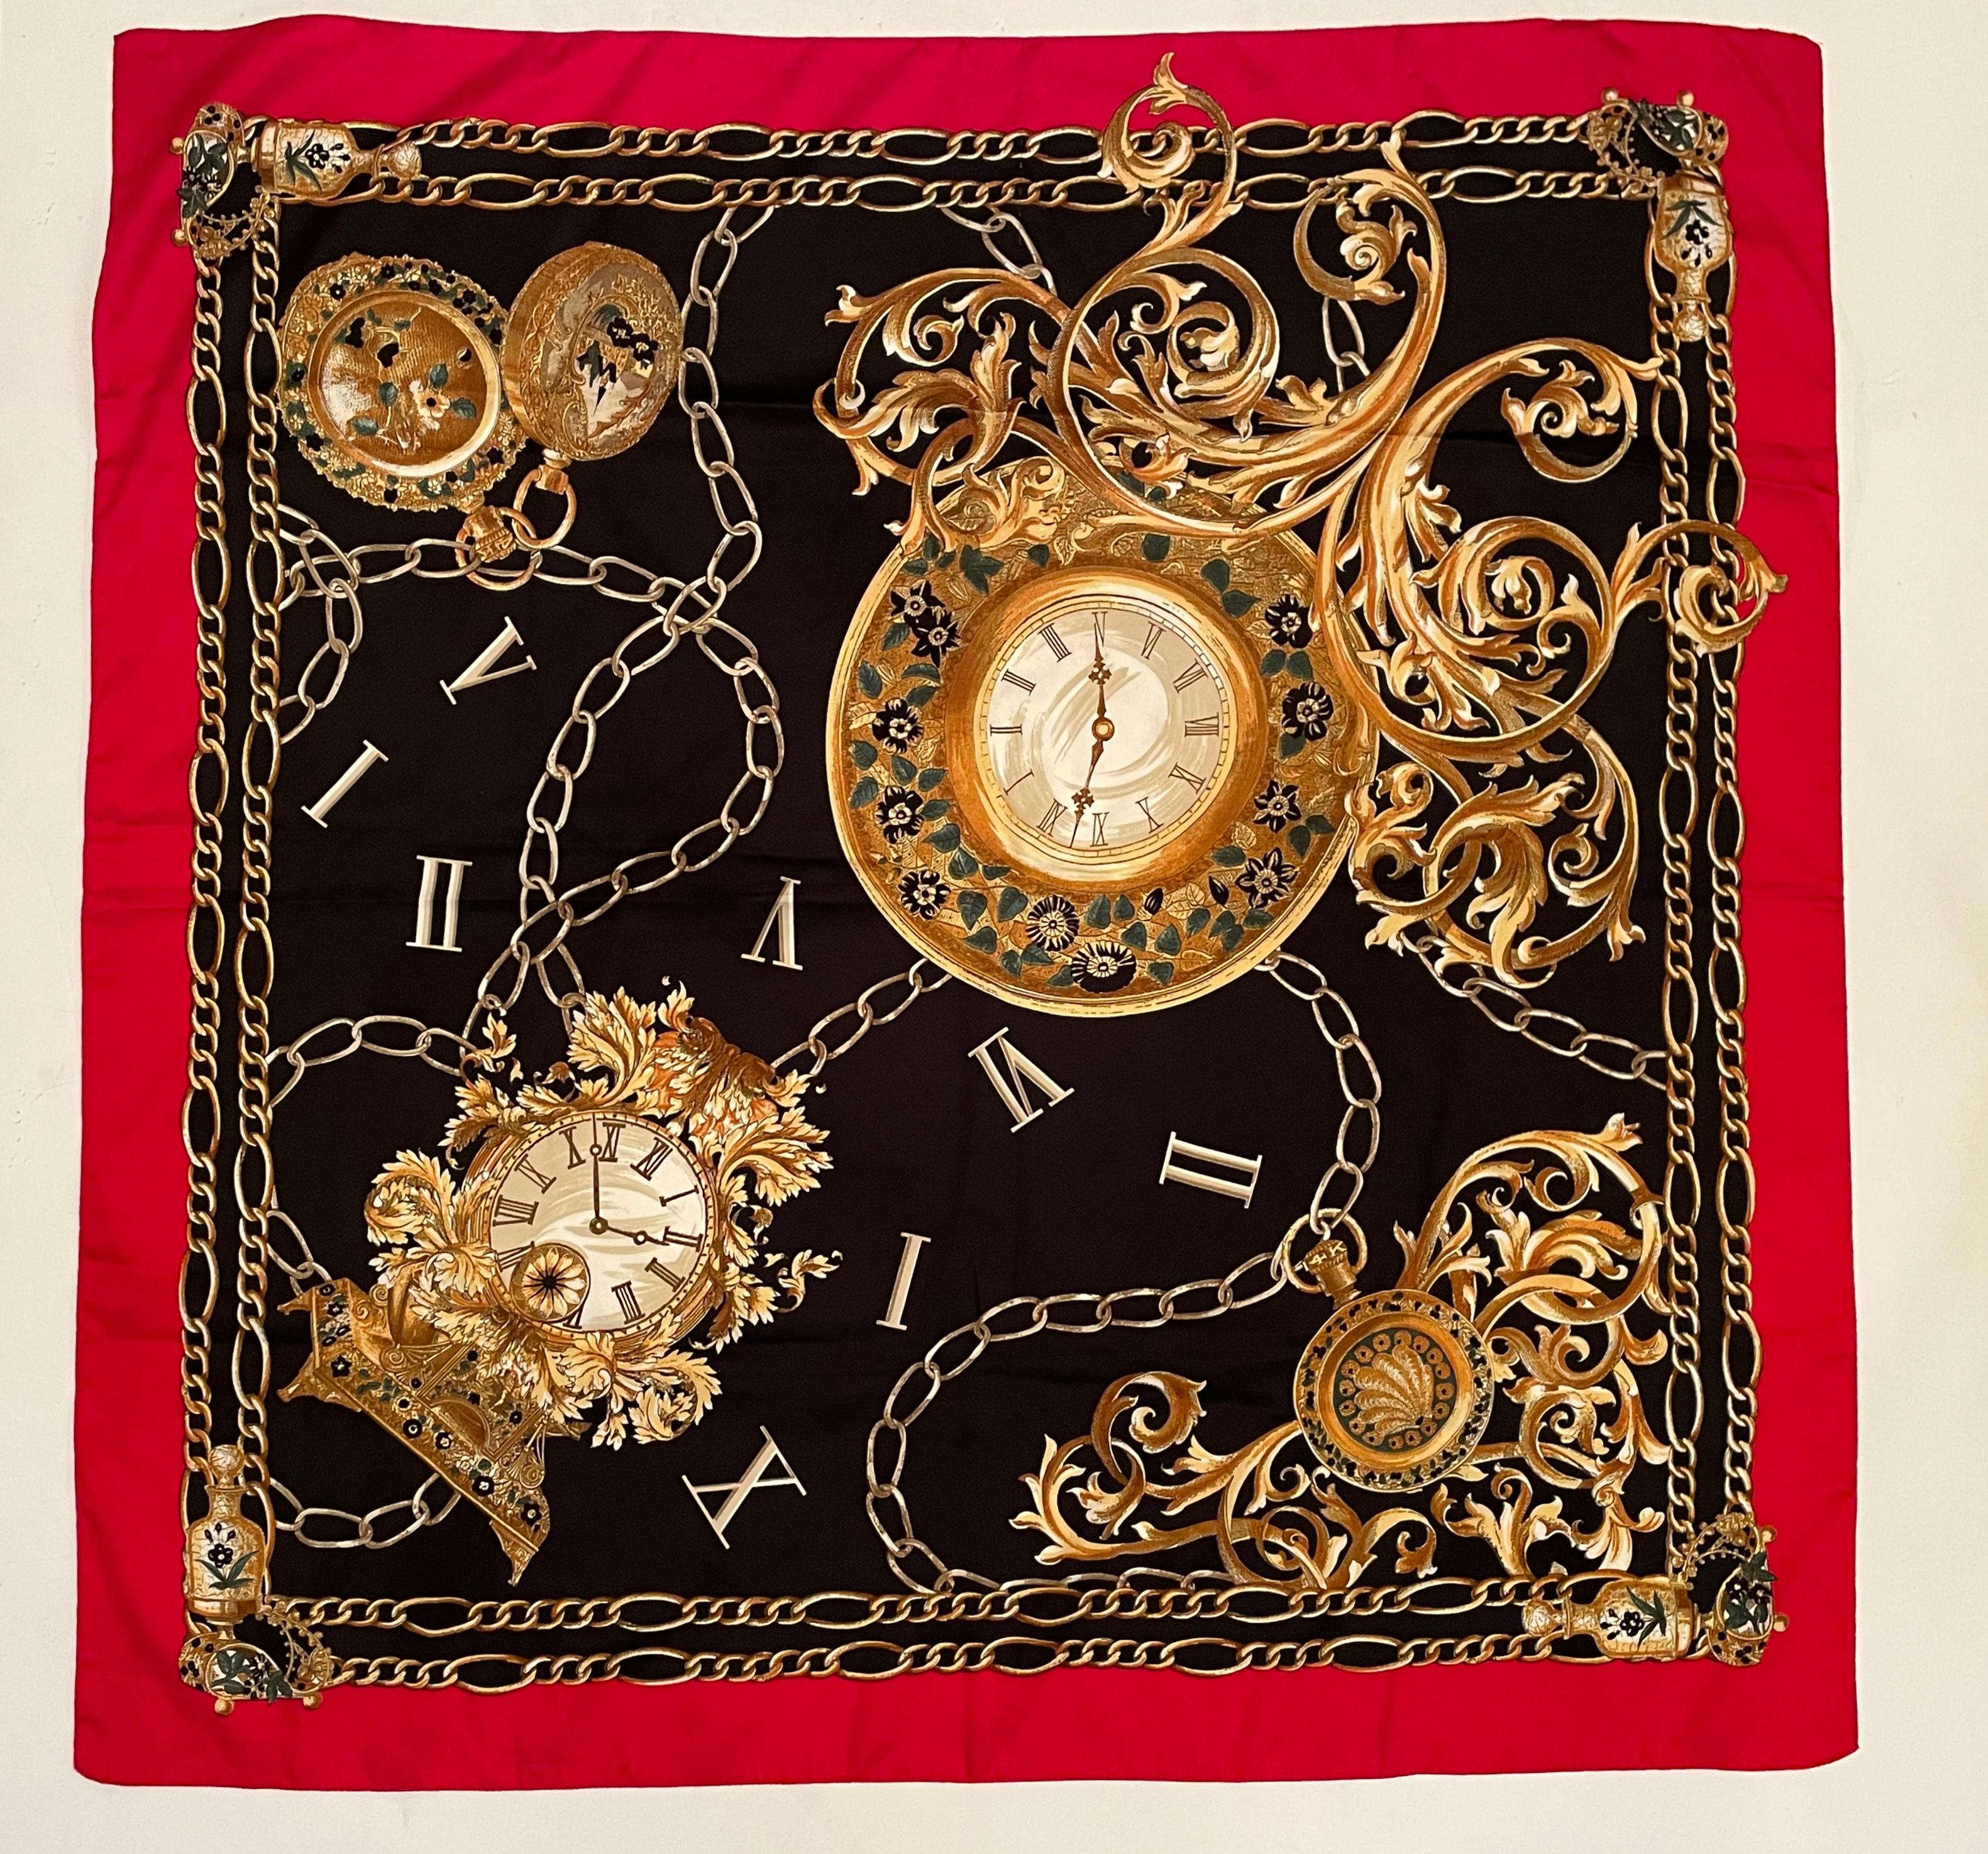 Ein wunderschönes Design-Tuch im Vintage-Stil von Hermes mit großen und kleinen viktorianischen Uhren, Wanduhren, Taschenuhren und römischen Zahlen mit Goldketten drum herum.
Druck in Goldfarben auf schwarzem Hintergrund mit rotem Rand.
Die Farben